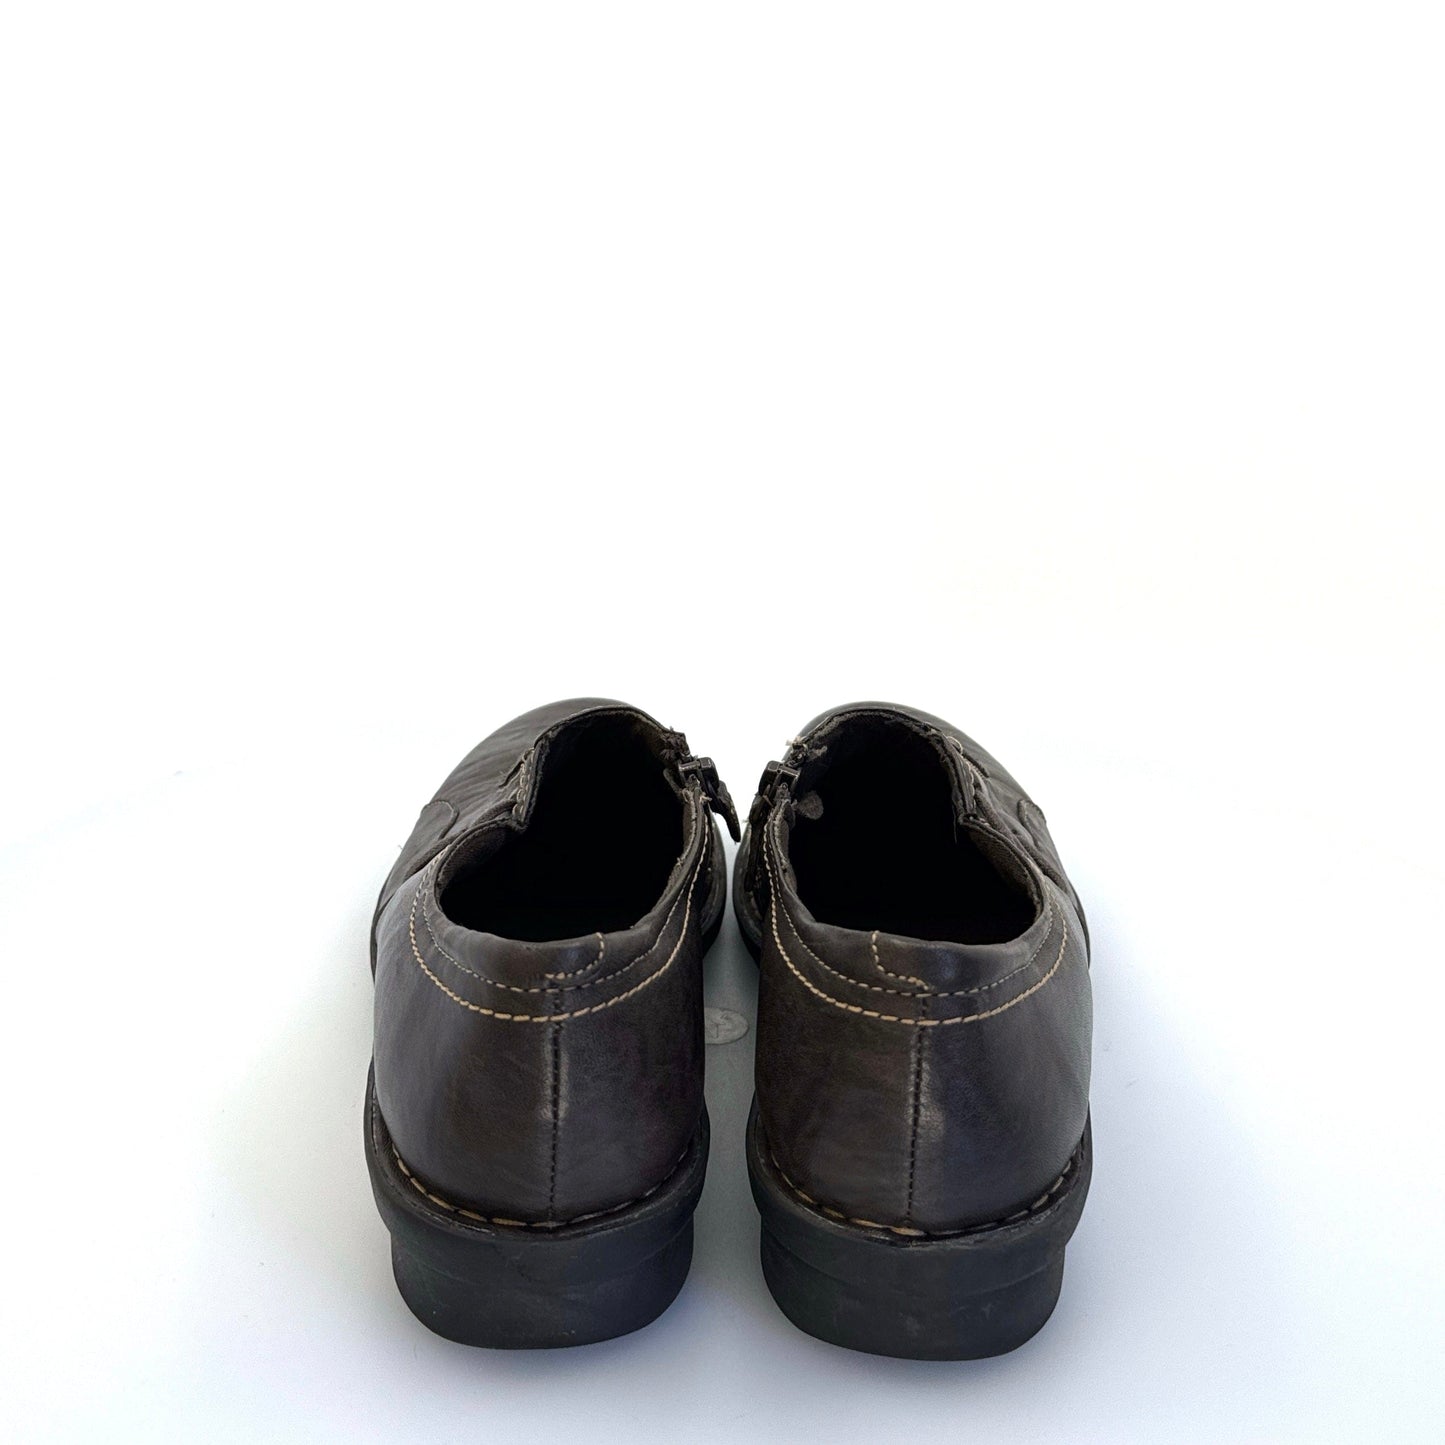 Clarks Bendables | Women Asymmetric Zipper Leather Shoes | Color: Brown | Size: 8.5M